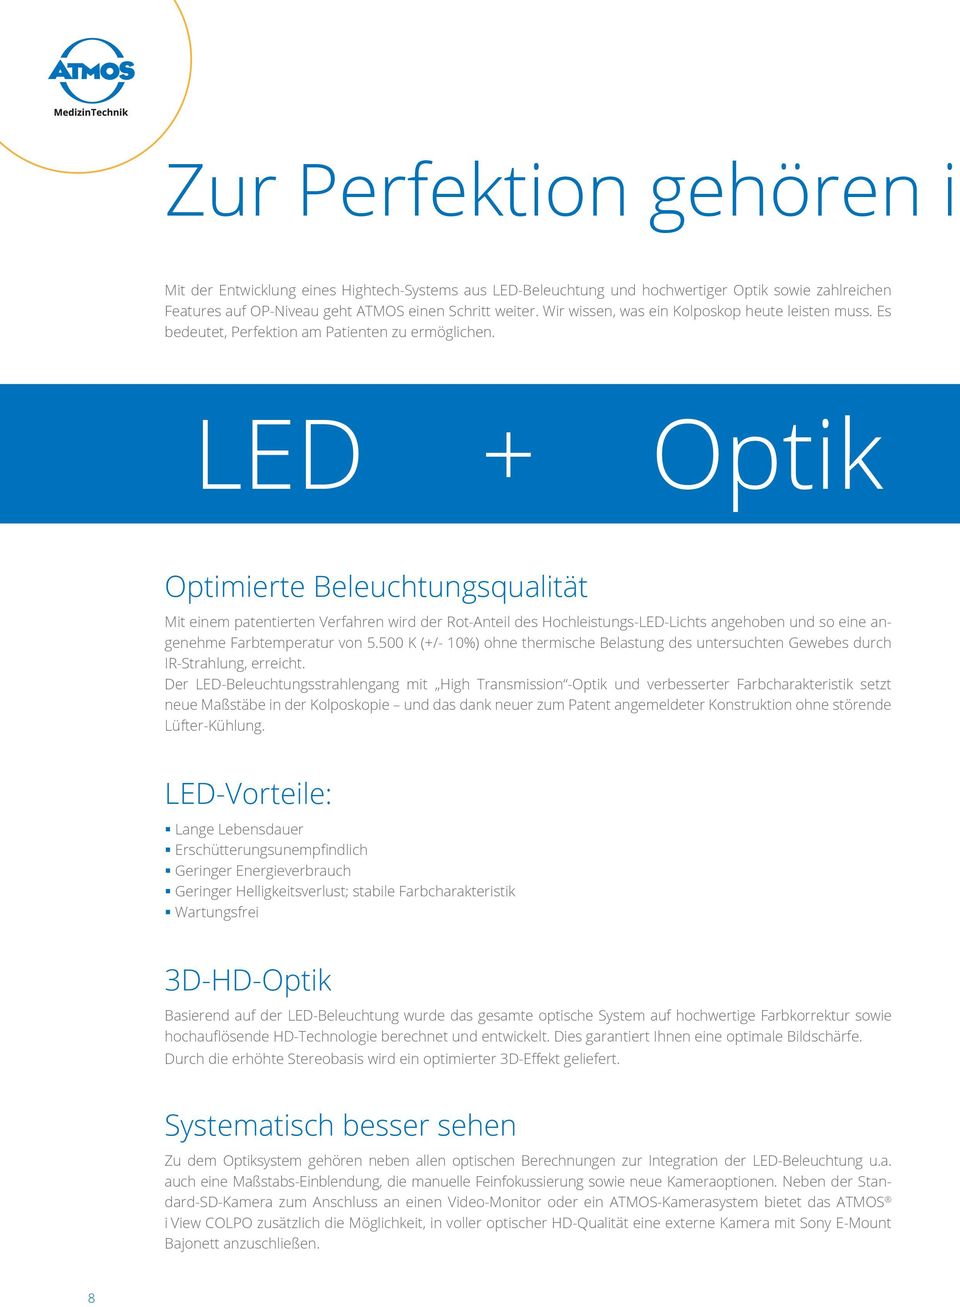 LED + Optik Optimierte Beleuchtungsqualität Mit einem patentierten Verfahren wird der Rot-Anteil des Hochleistungs-LED-Lichts angehoben und so eine angenehme Farbtemperatur von 5.